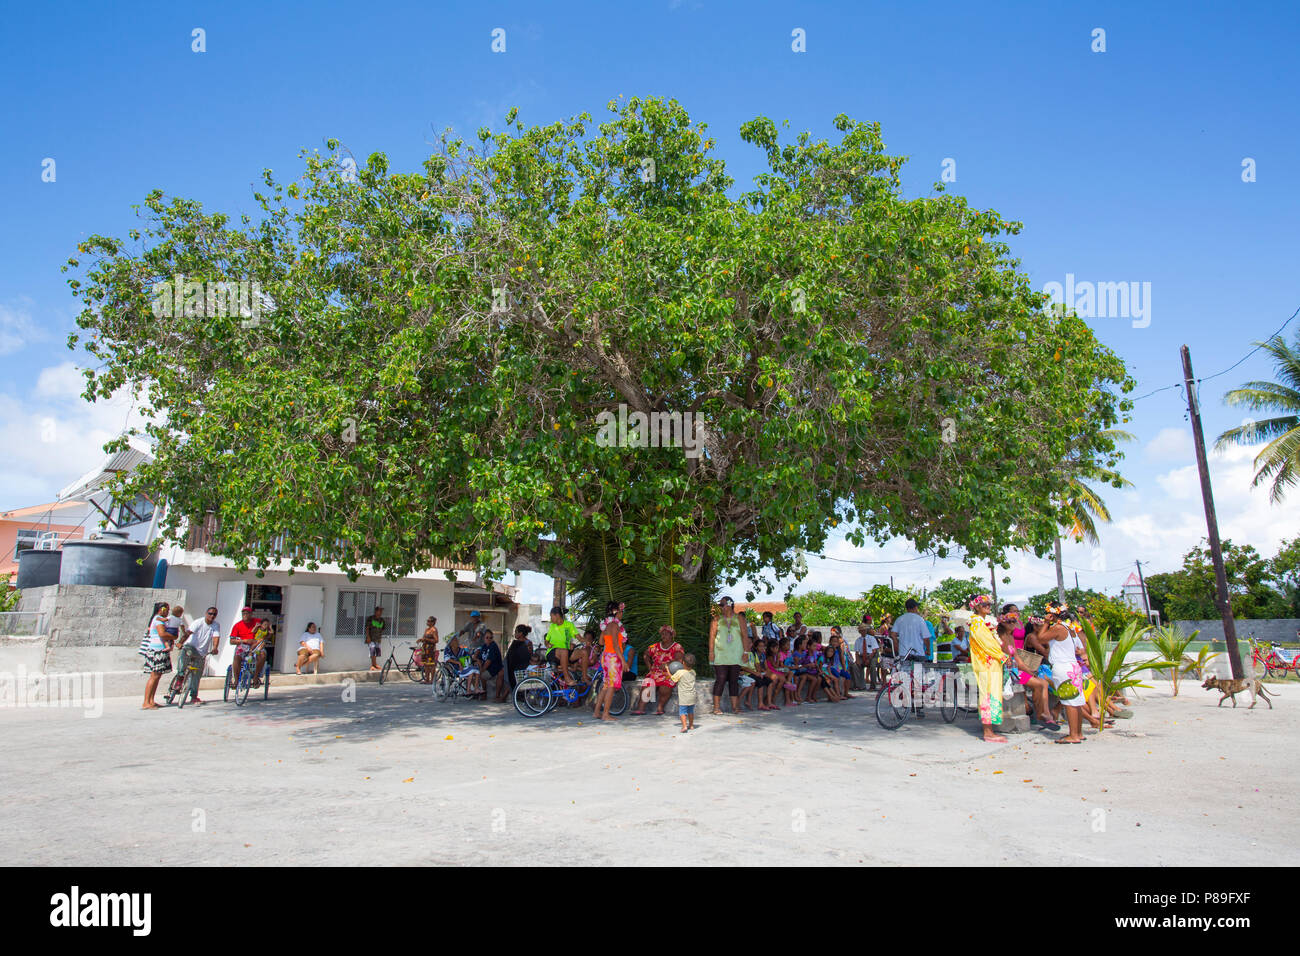 Manihi comunità riunita nell'ombra di un albero di grandi dimensioni Foto Stock